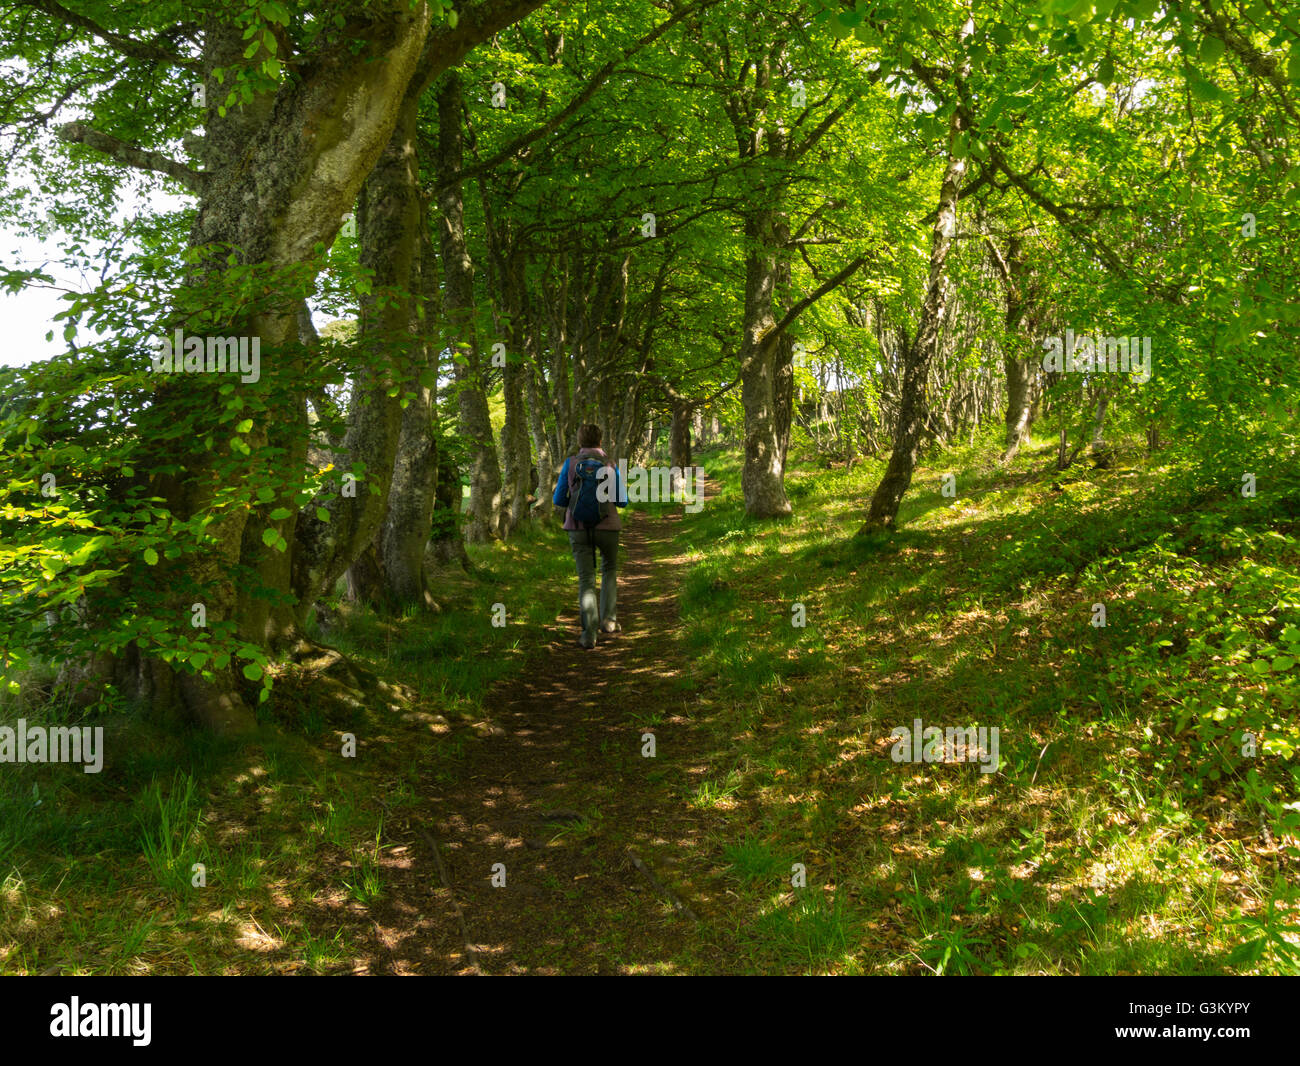 Femelle solitaire walker marche à travers la zone de bois de Dornoch Histoire de marche Trail publié un droit de passage public Sutherland Highlands écossais Banque D'Images